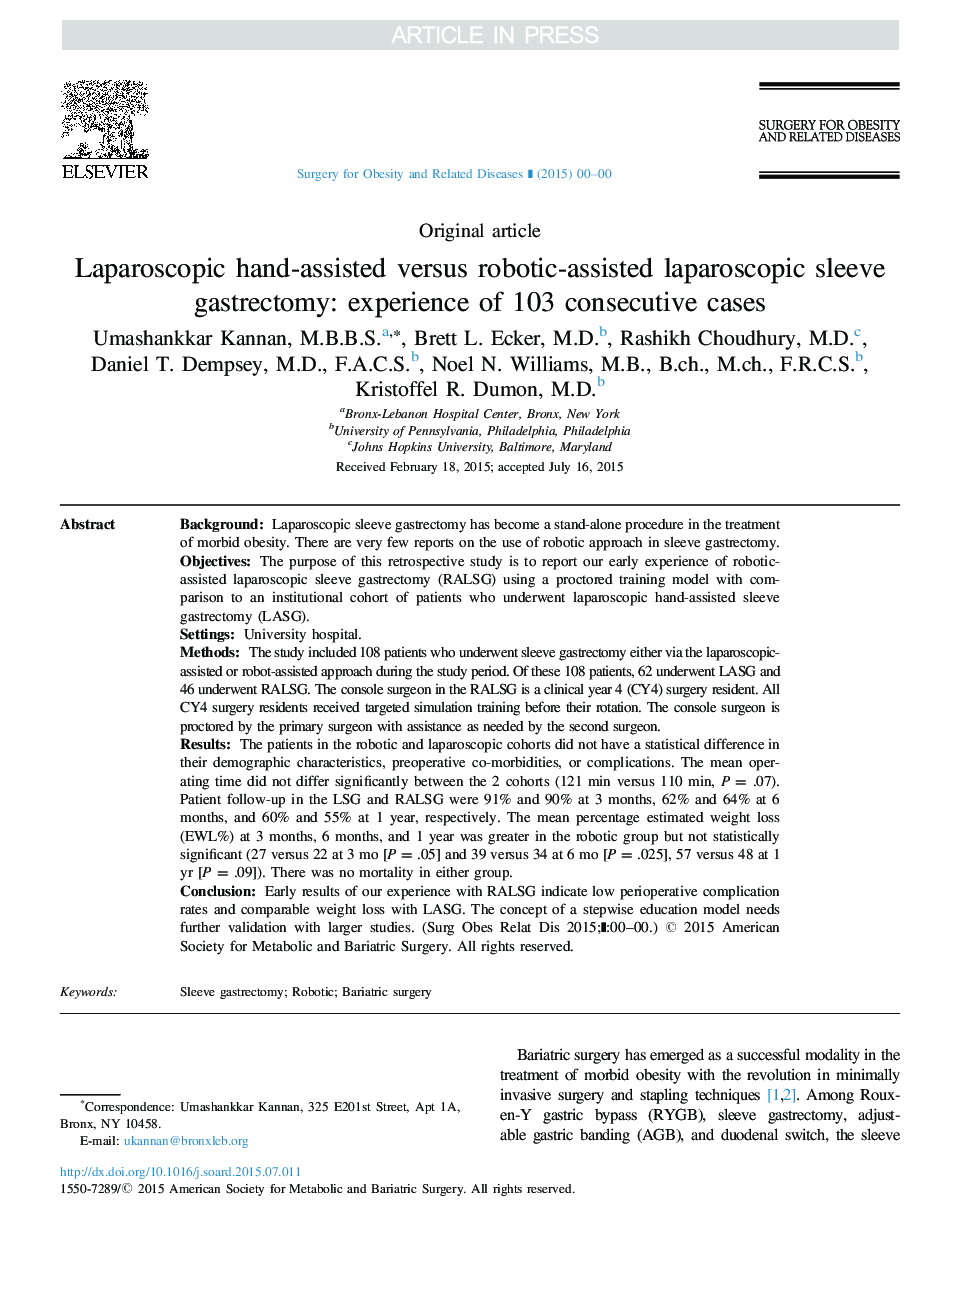 گاسترکتومی آستین لاپاروسکوپی با استفاده از دستکاری لاپاروسکوپی در مقابل دستکاری شده با روباتیک: تجربه 103 مورد متوالی 